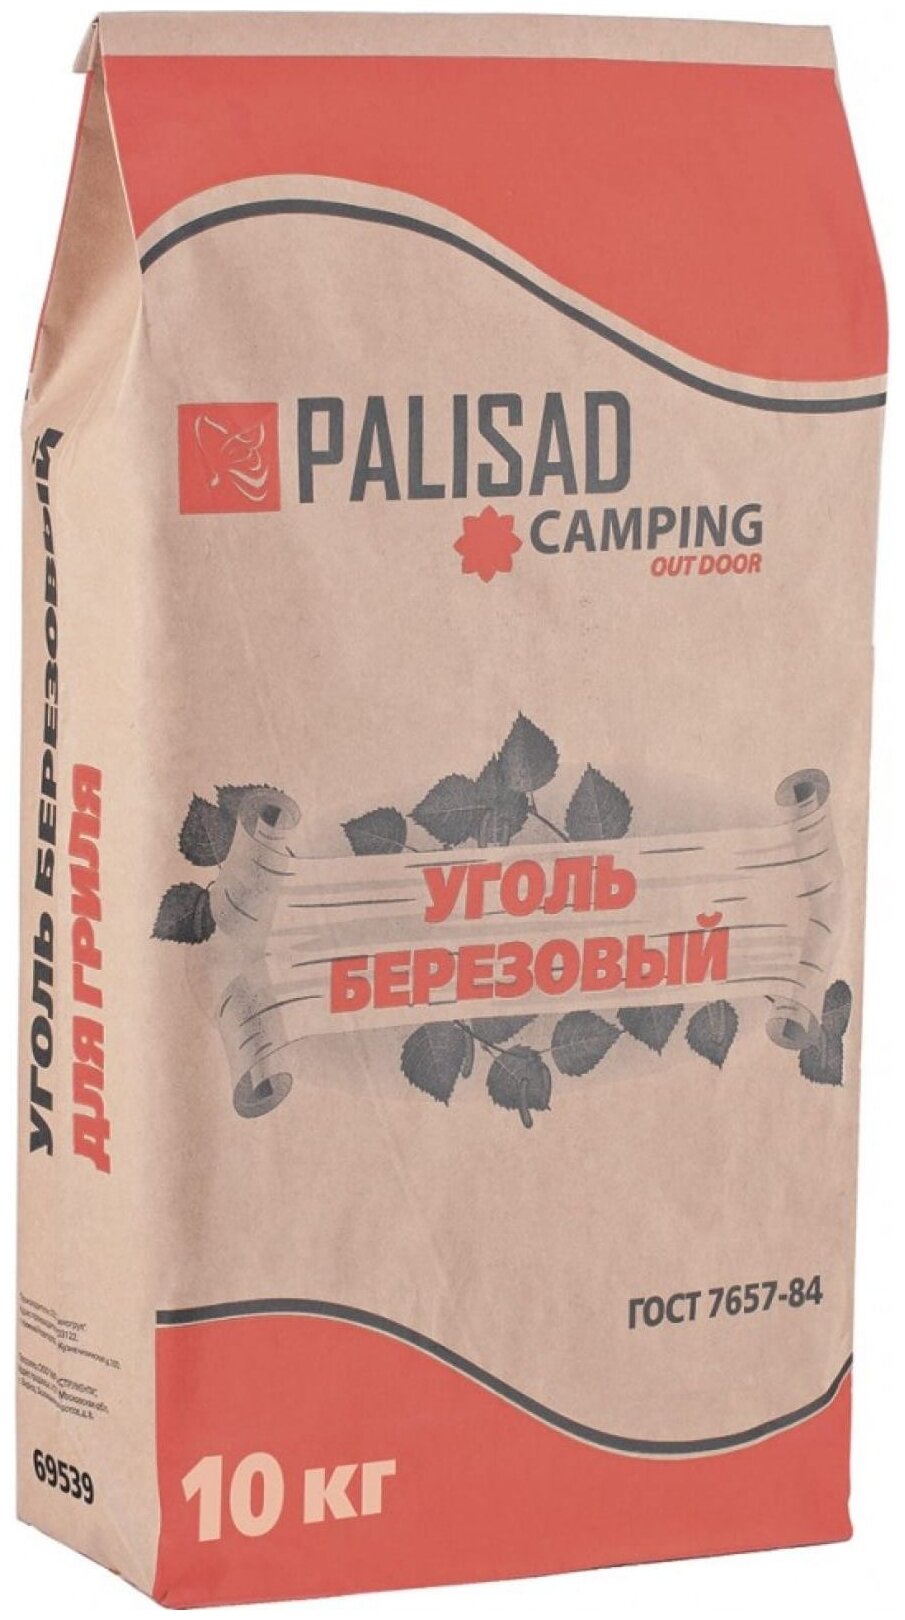 Уголь берёзовый, 10 кг, Россия Camping, PALISAD 69539 - фотография № 1